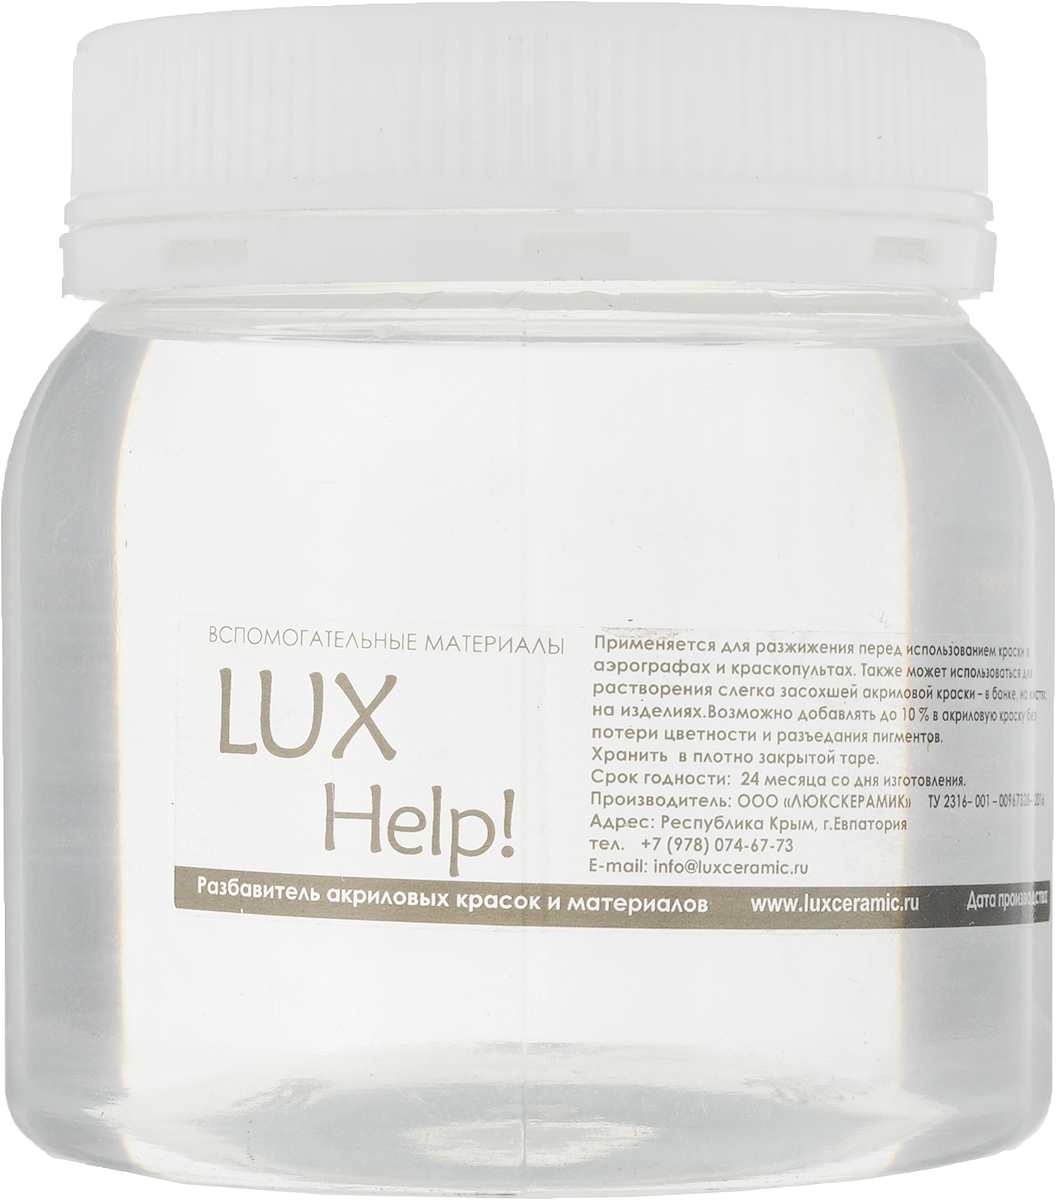 Luxart Растворитель LuxHelp! 0,25 кг